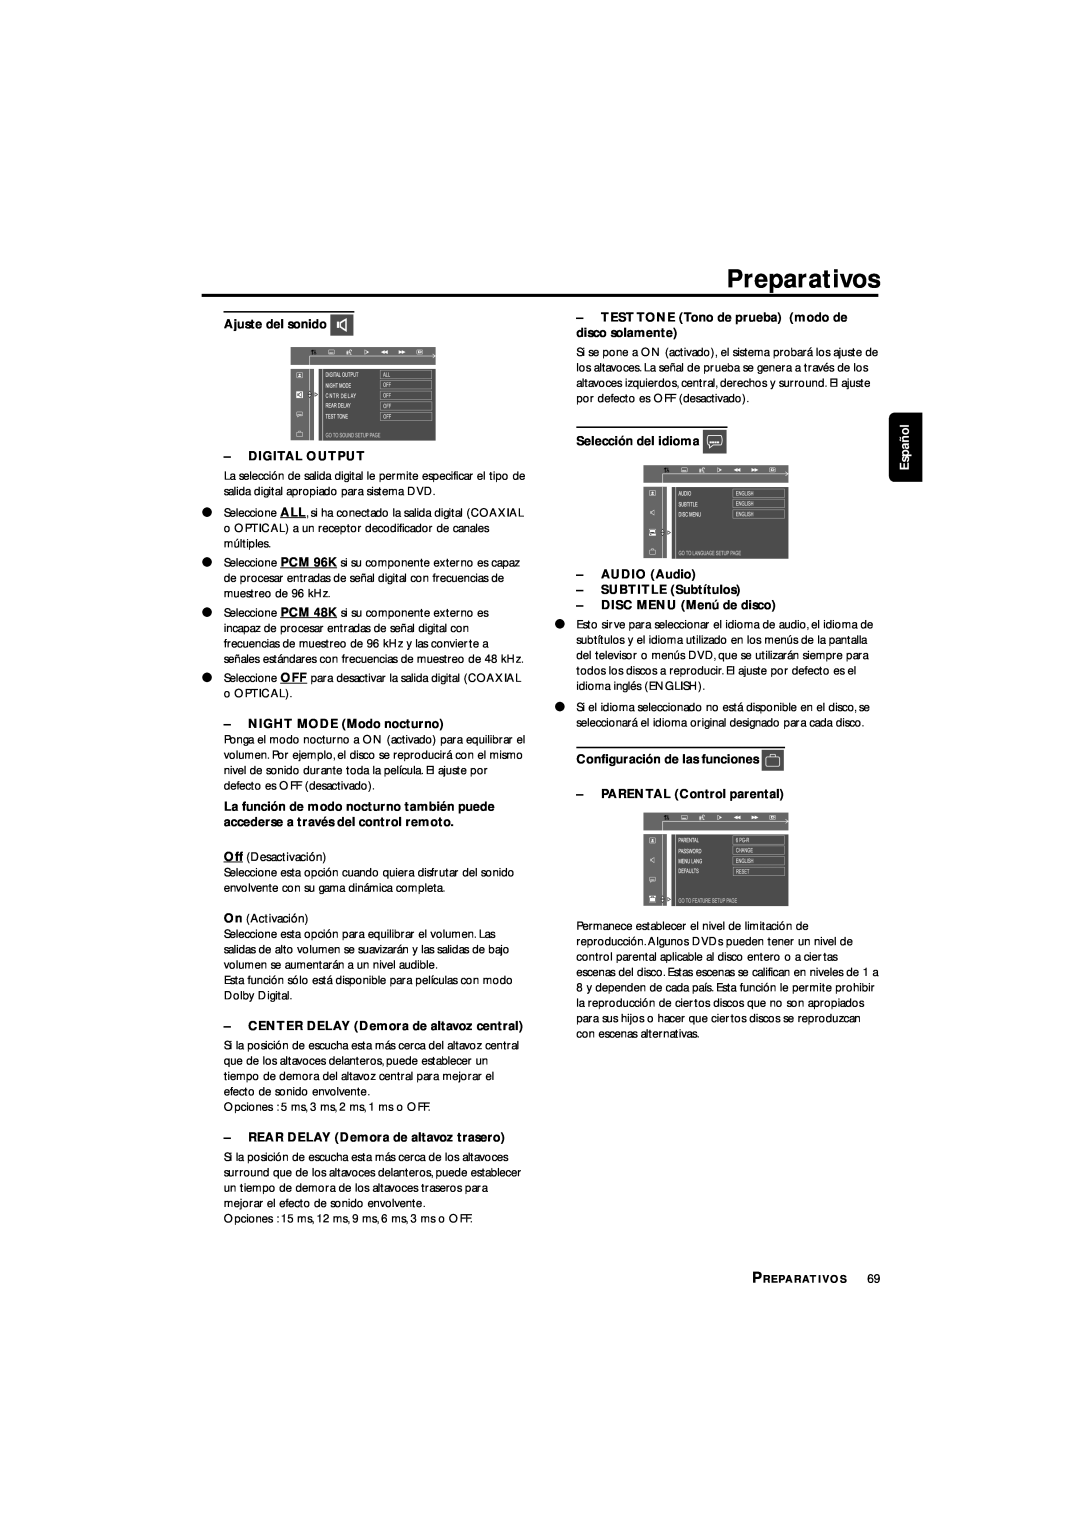 Philips LX3700D manual Preparativos, Ajuste del sonido, Español 